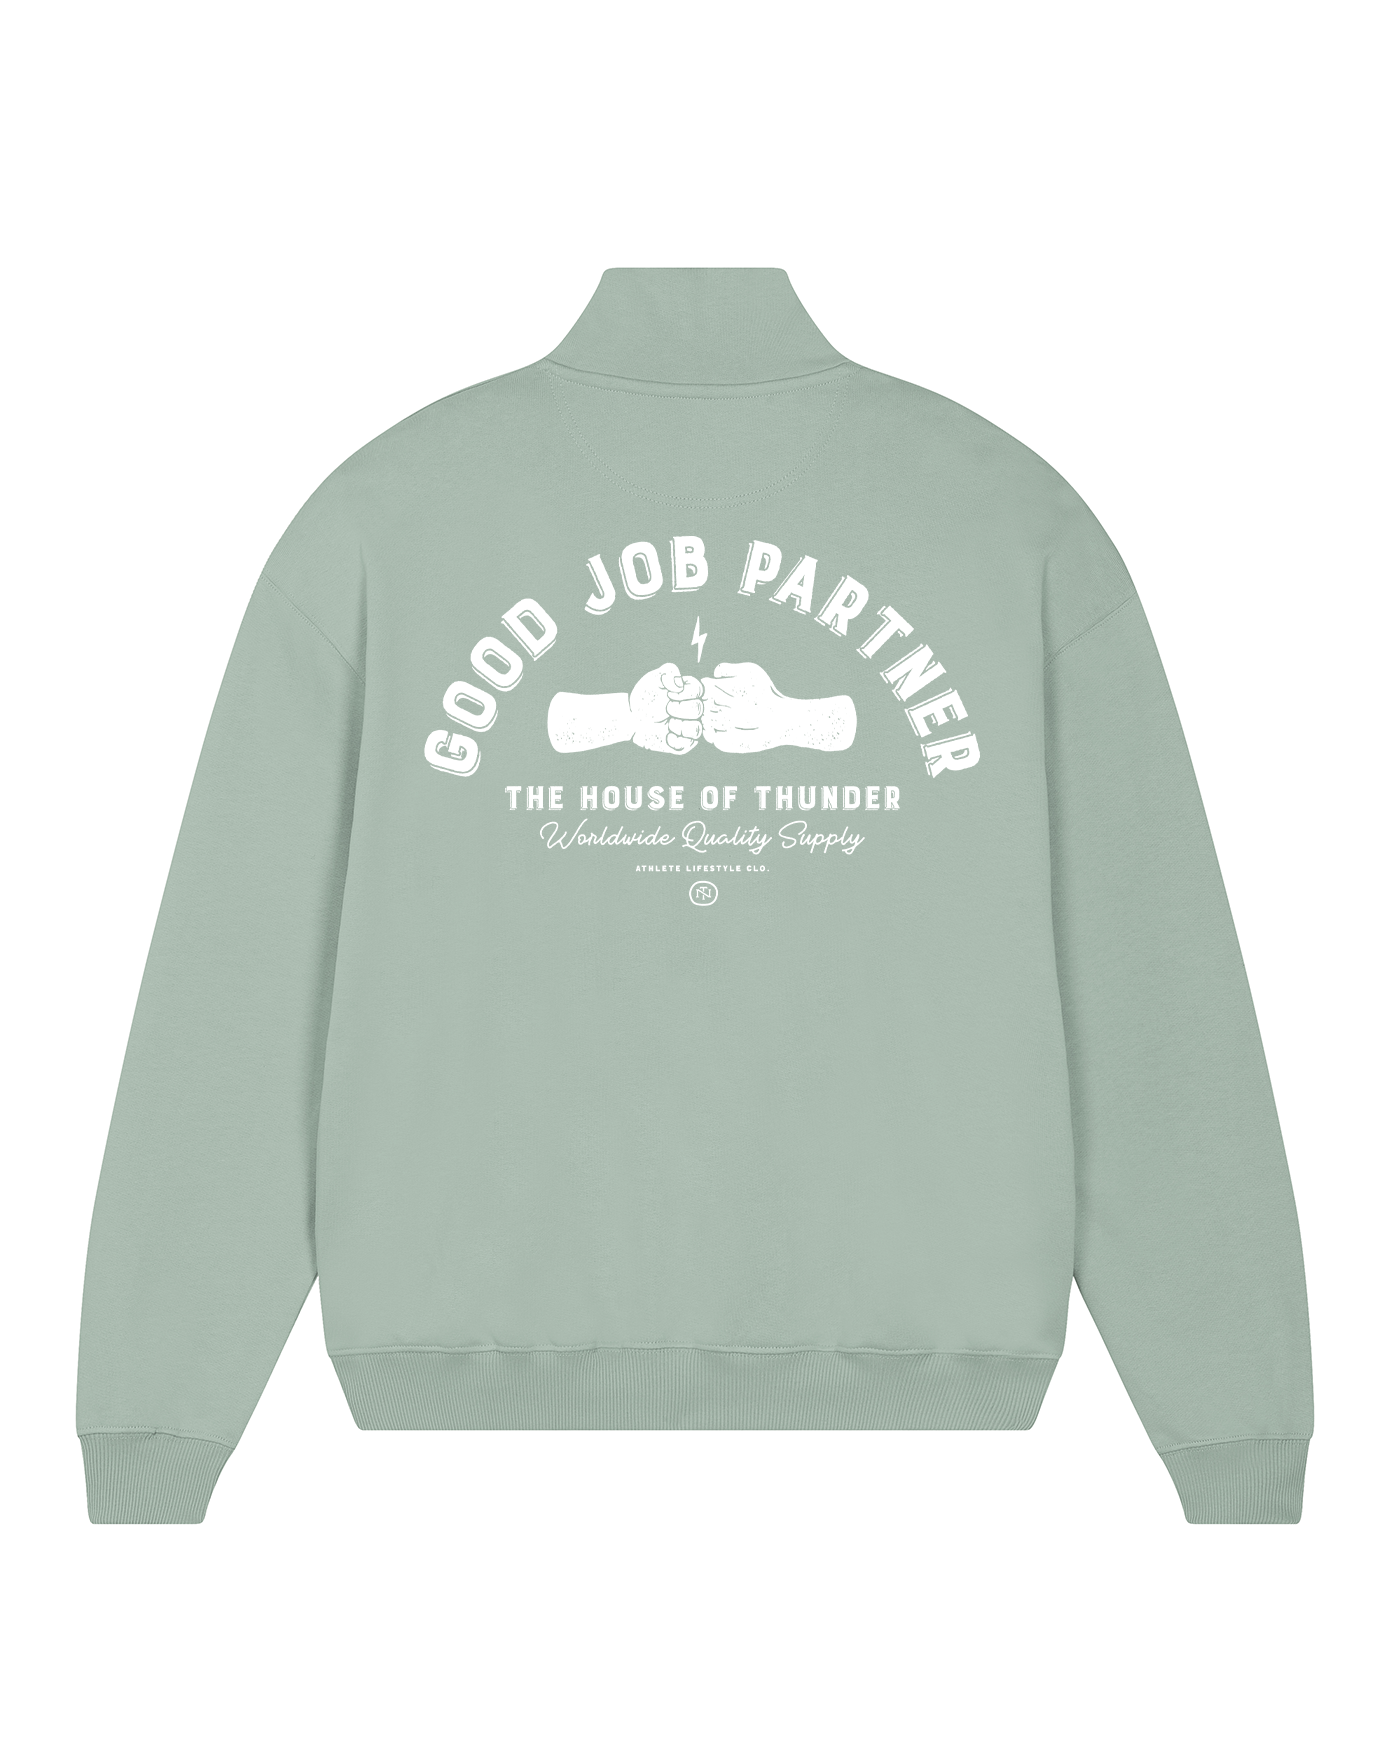 Good Job Partner Half zip sweatshirt - Mint